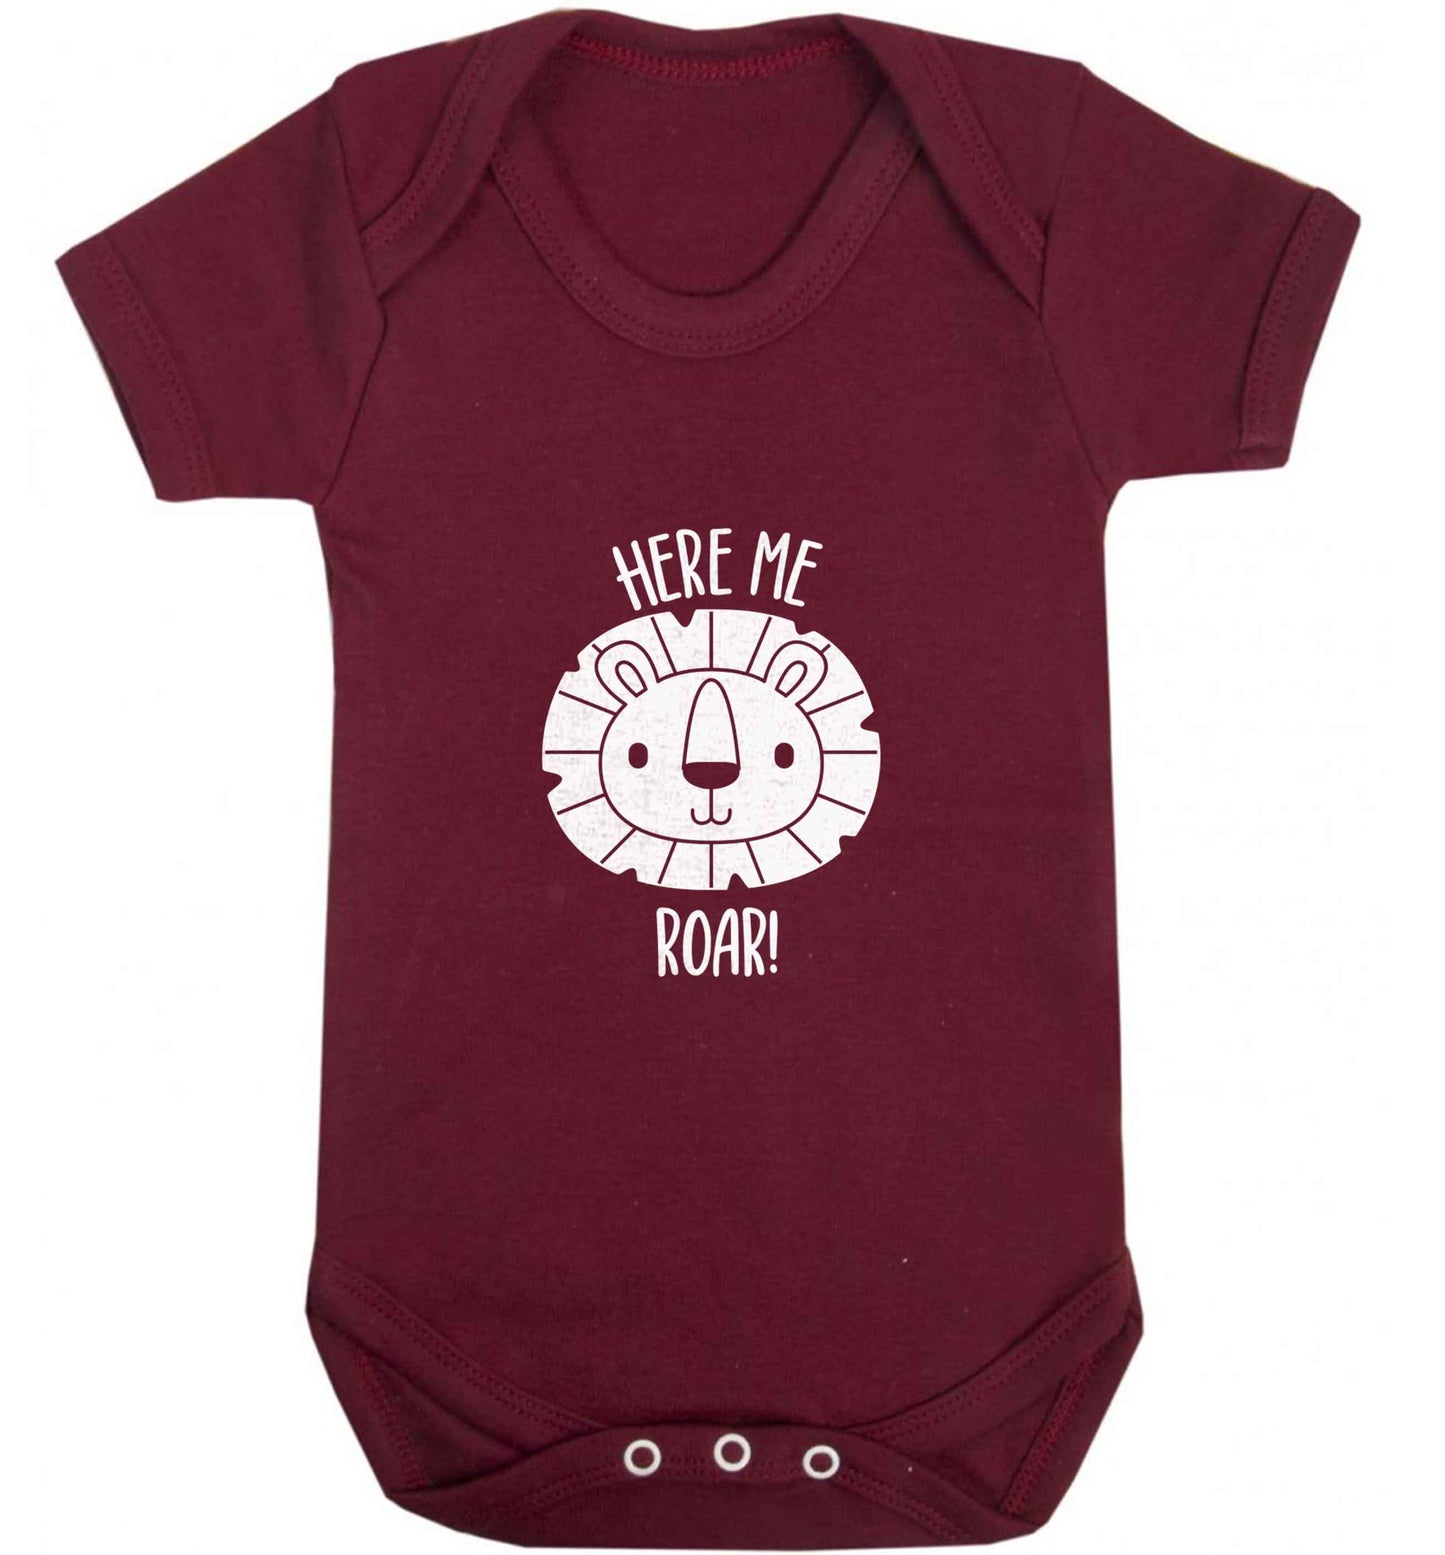 Hear me roar baby vest maroon 18-24 months